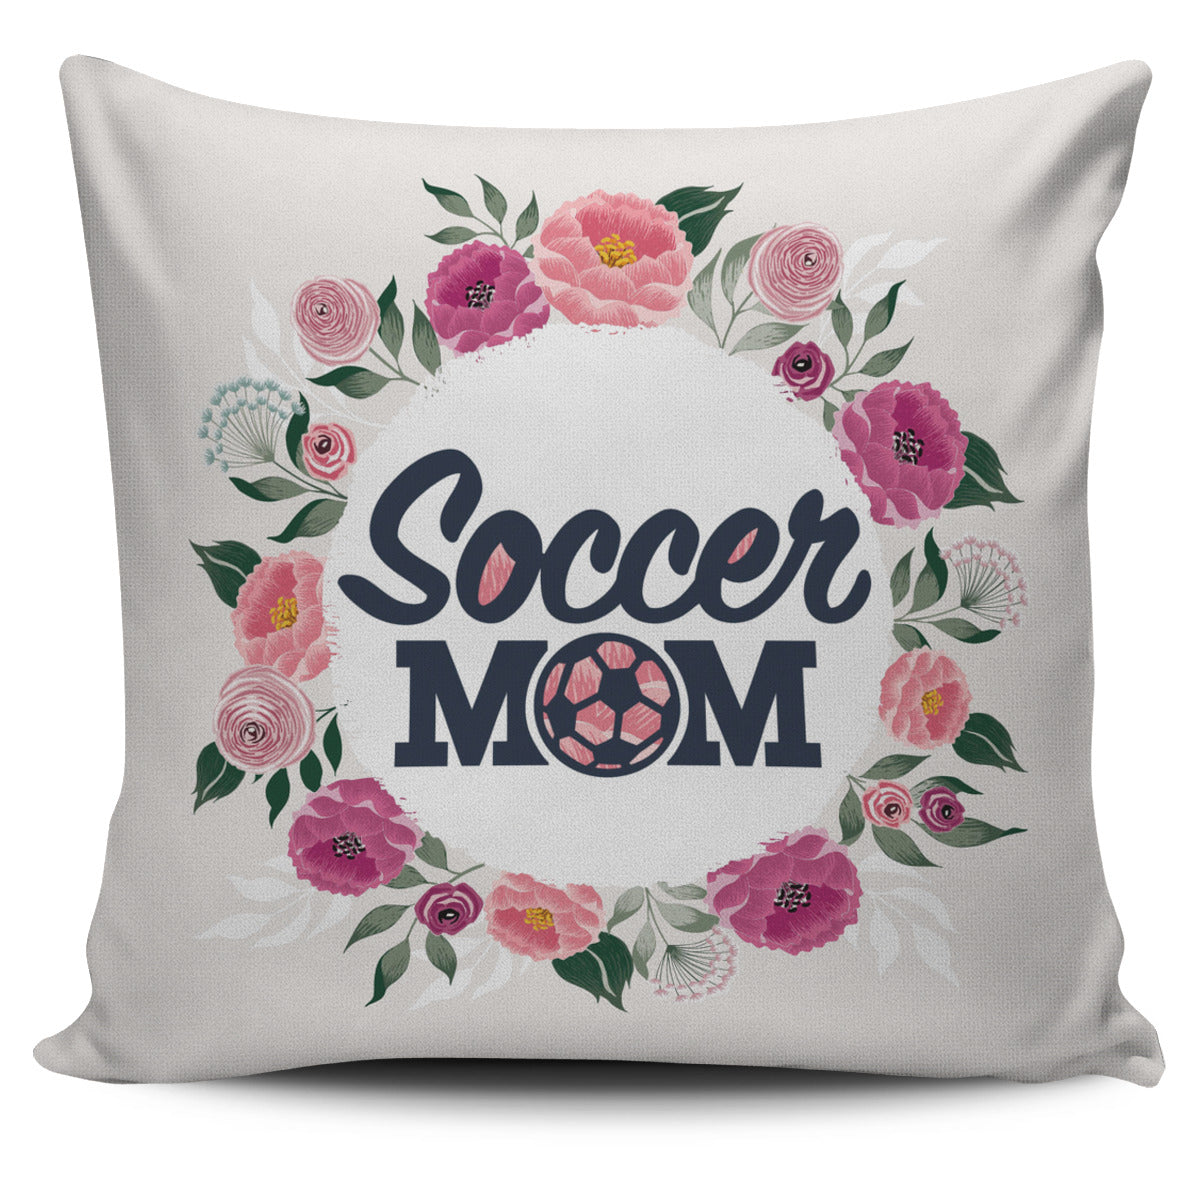 Soccer Mom Pillow Cover